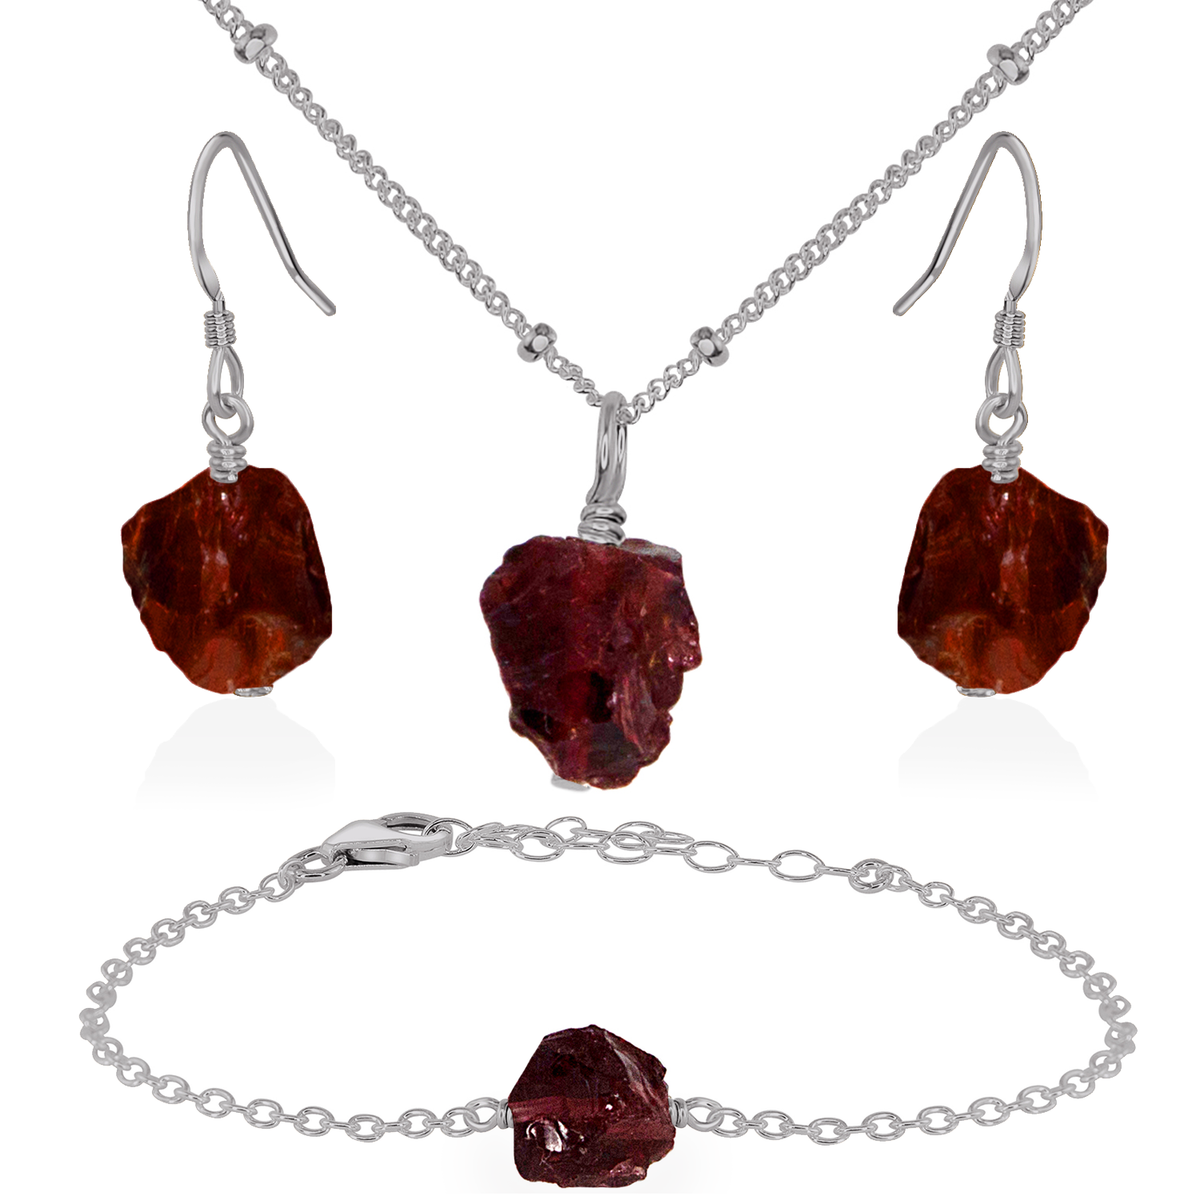 Raw Garnet Crystal Jewellery Set - Raw Garnet Crystal Jewellery Set - Stainless Steel / Satellite / Necklace & Earrings & Bracelet - Luna Tide Handmade Crystal Jewellery